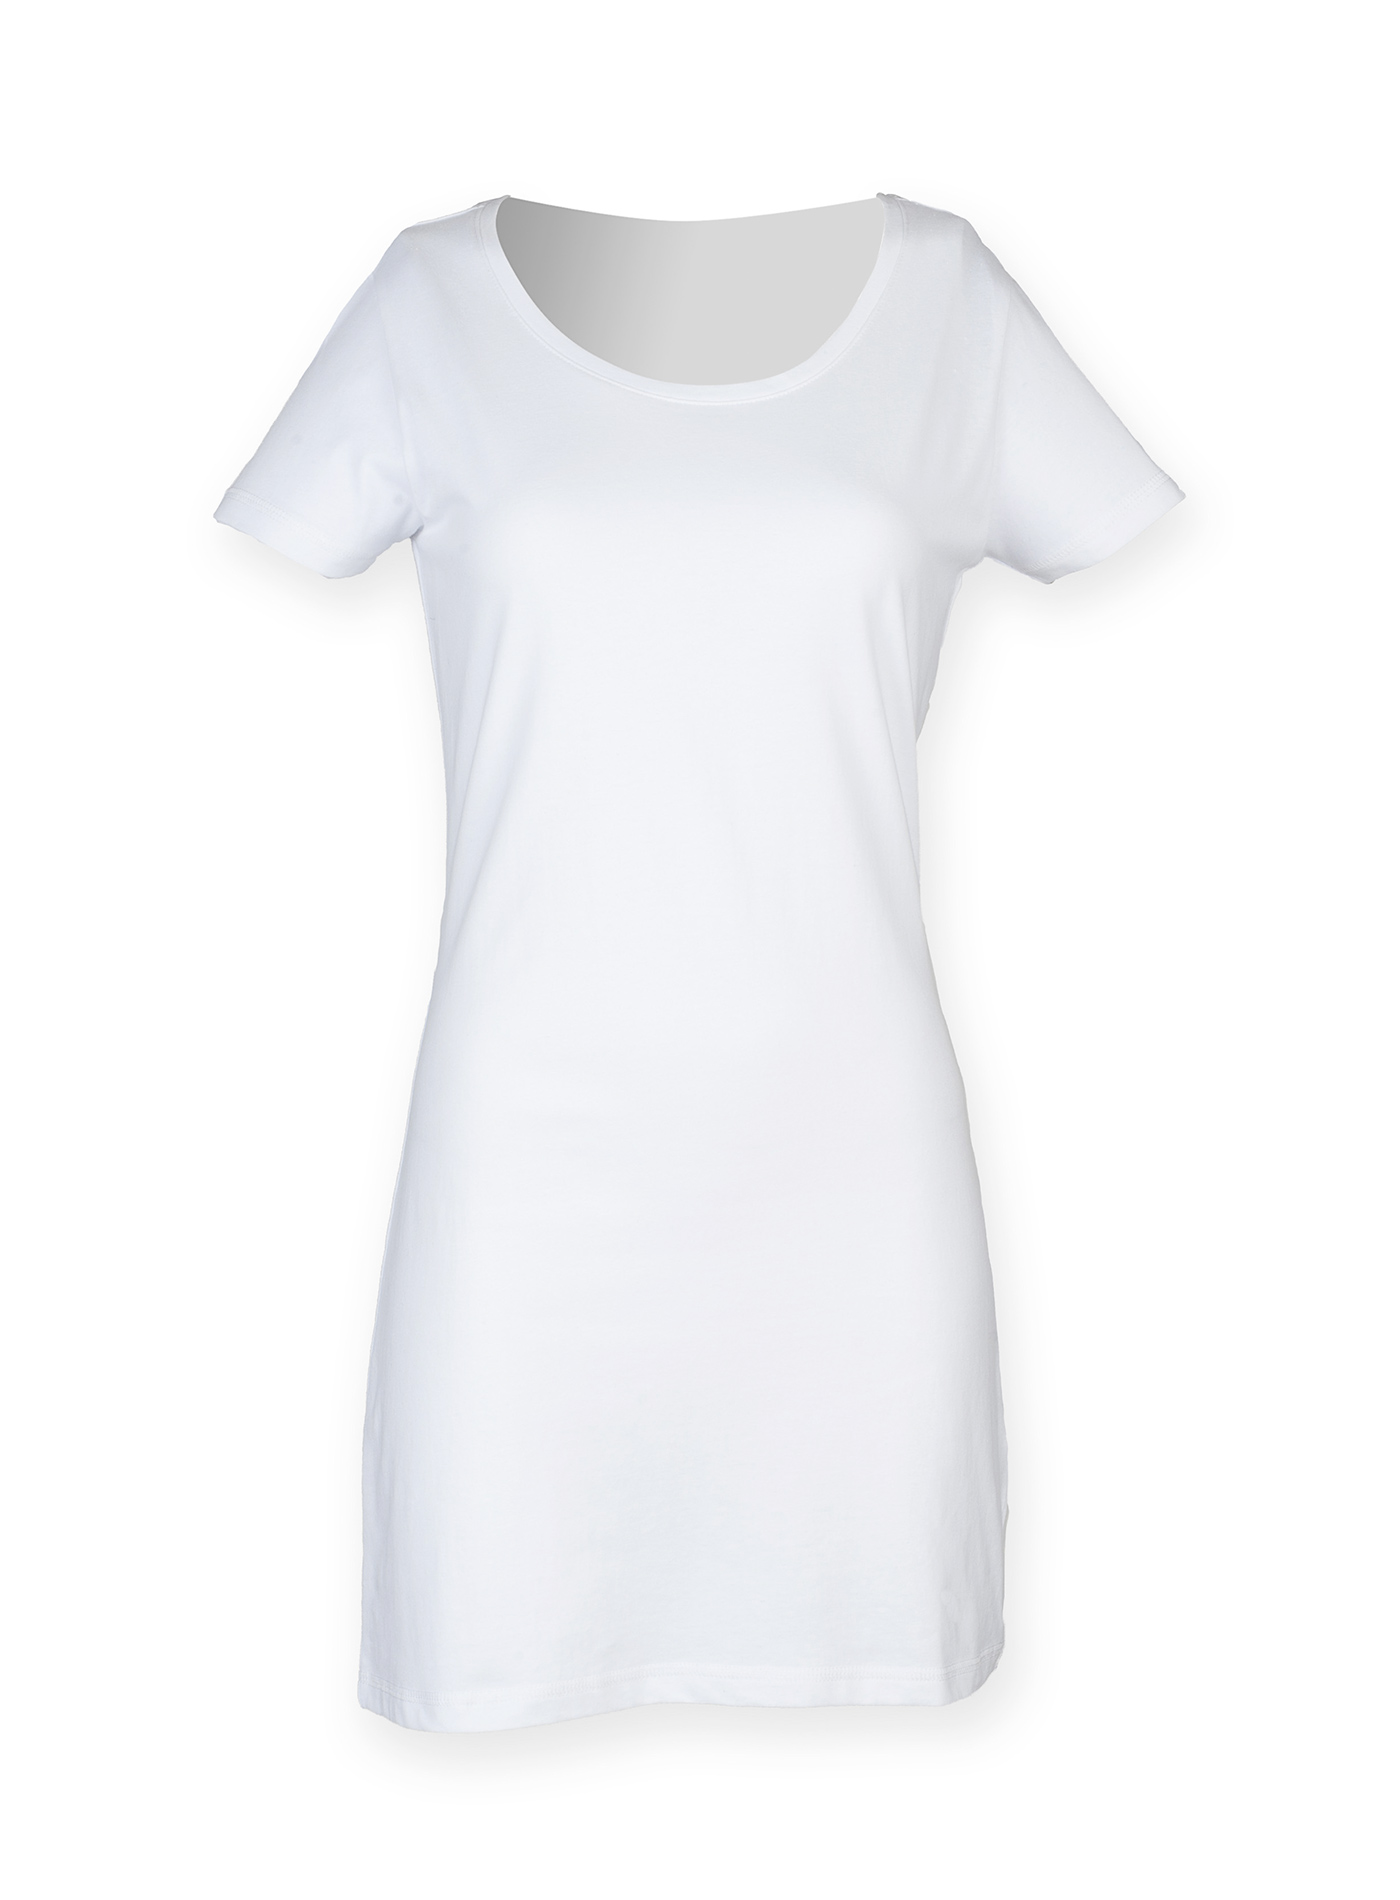 Dámské tričkové šaty - Bílá M